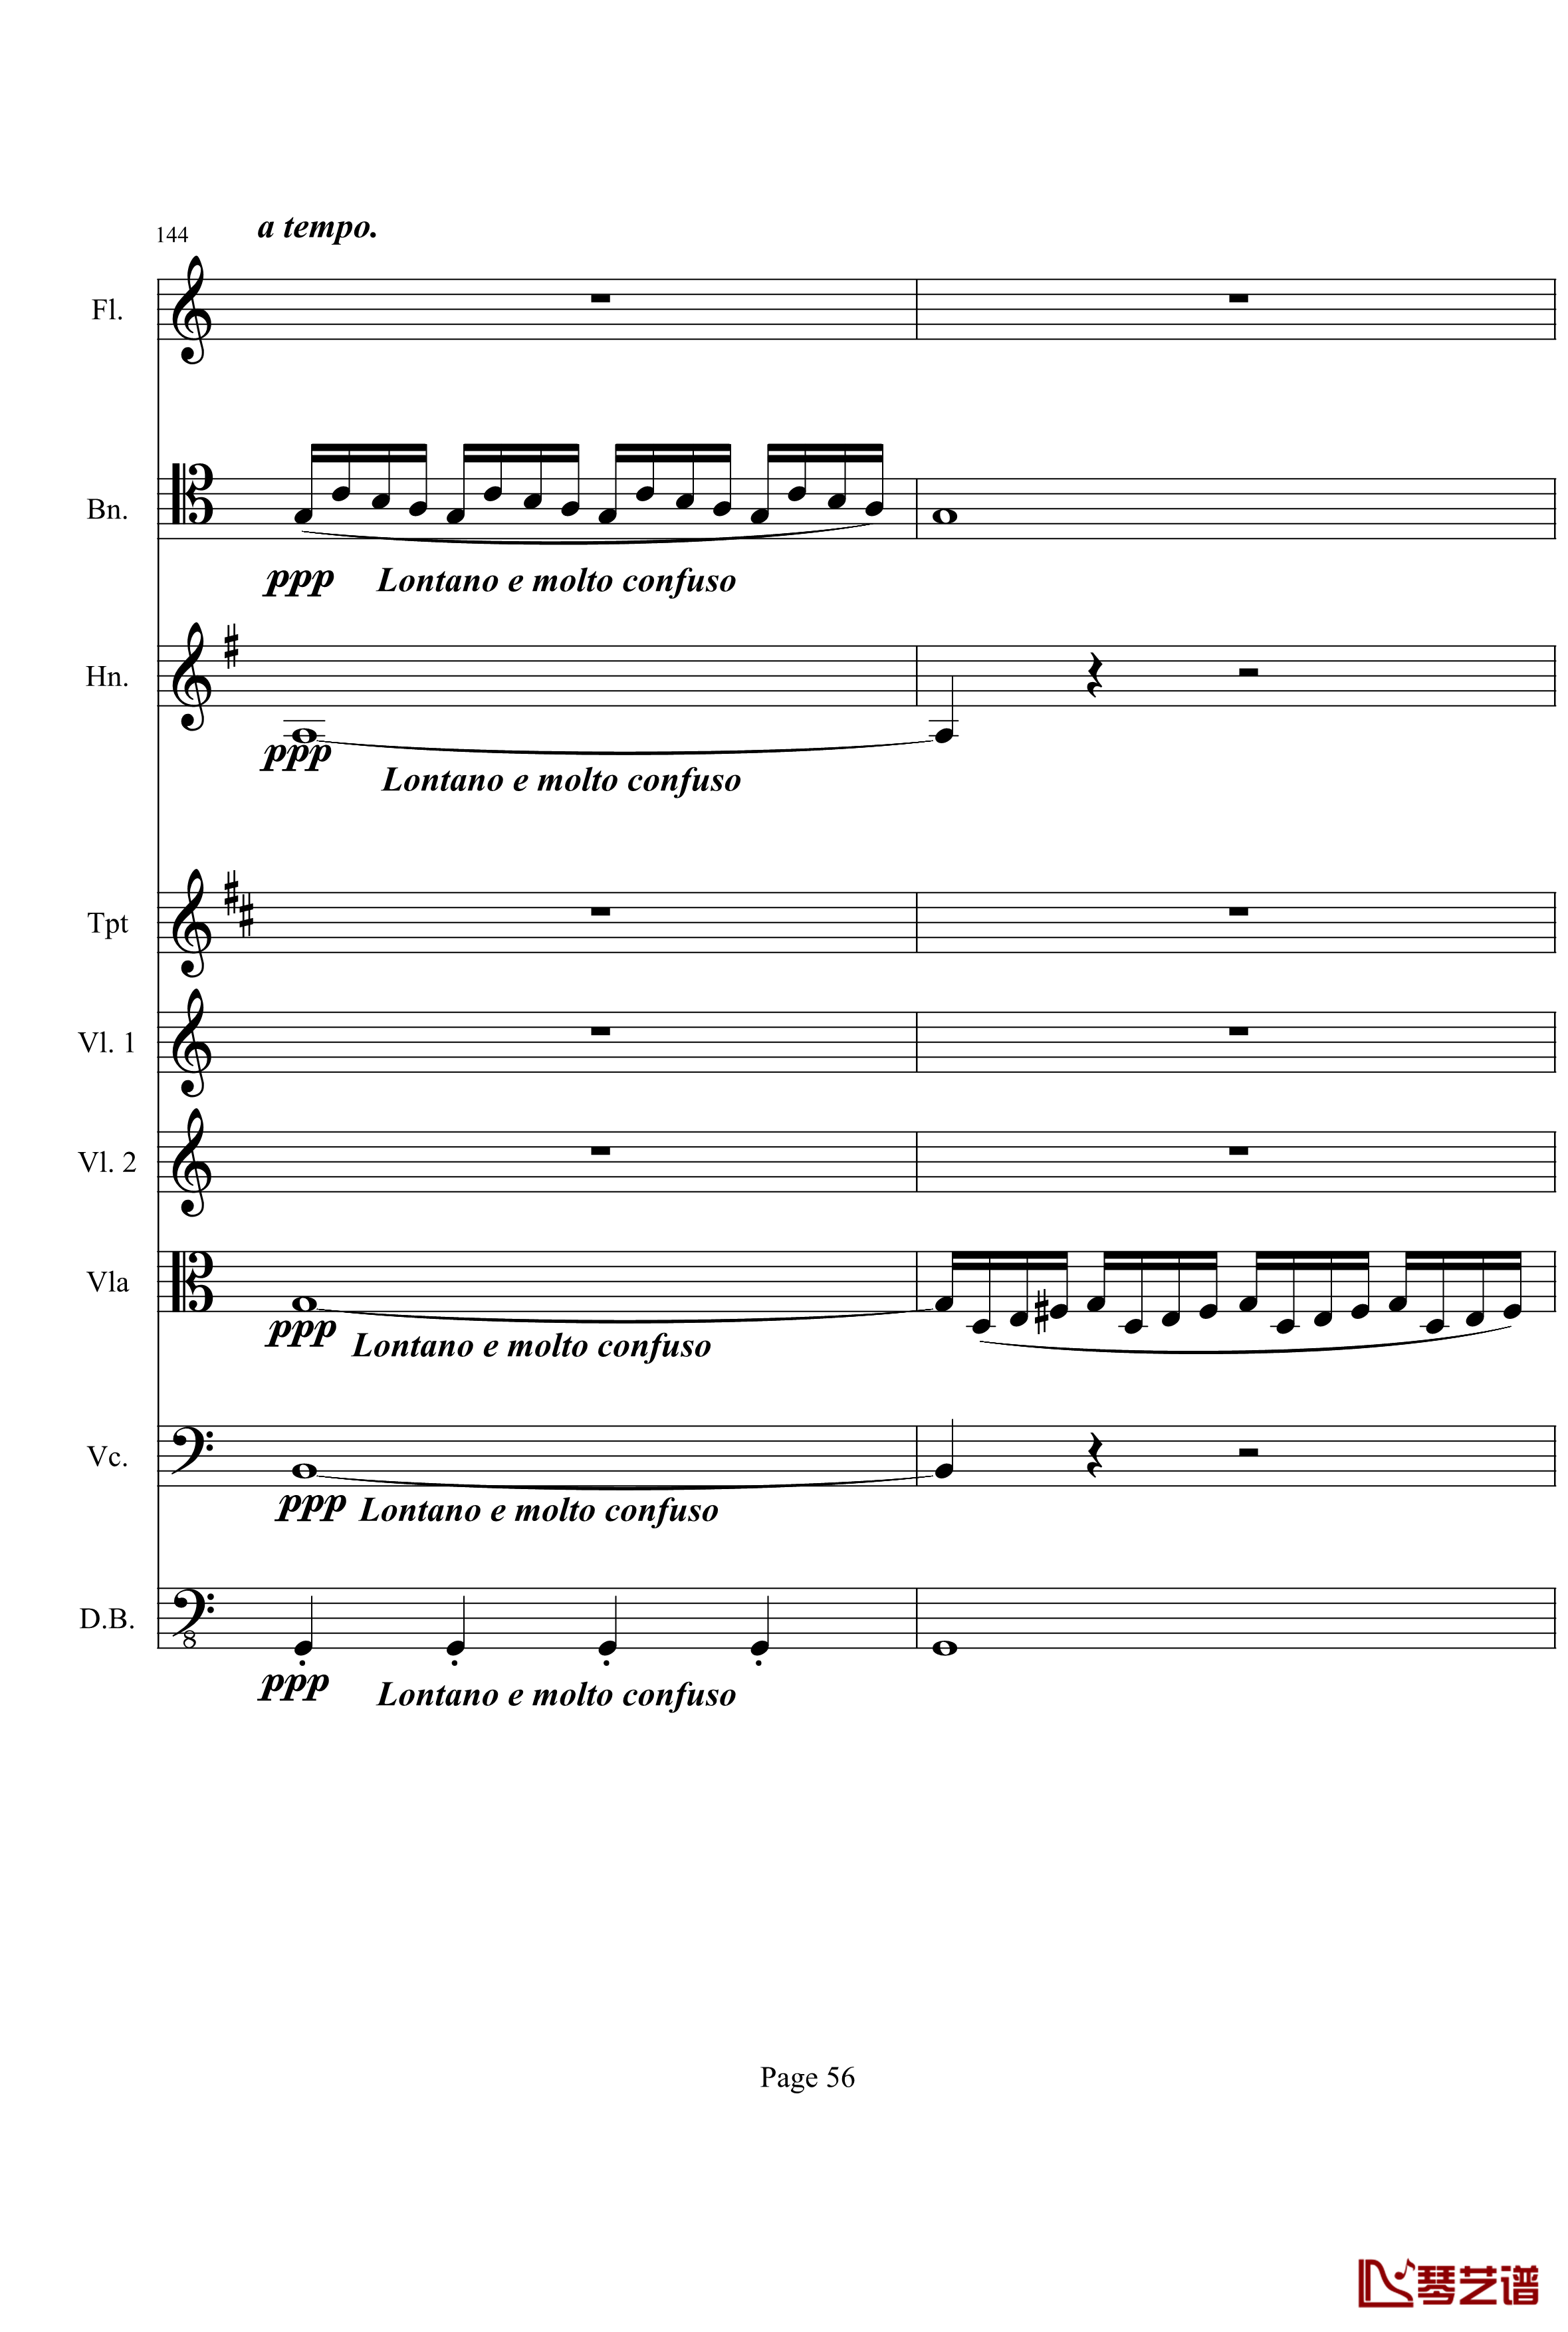 奏鸣曲之交响钢琴谱-第21-Ⅰ-贝多芬-beethoven56